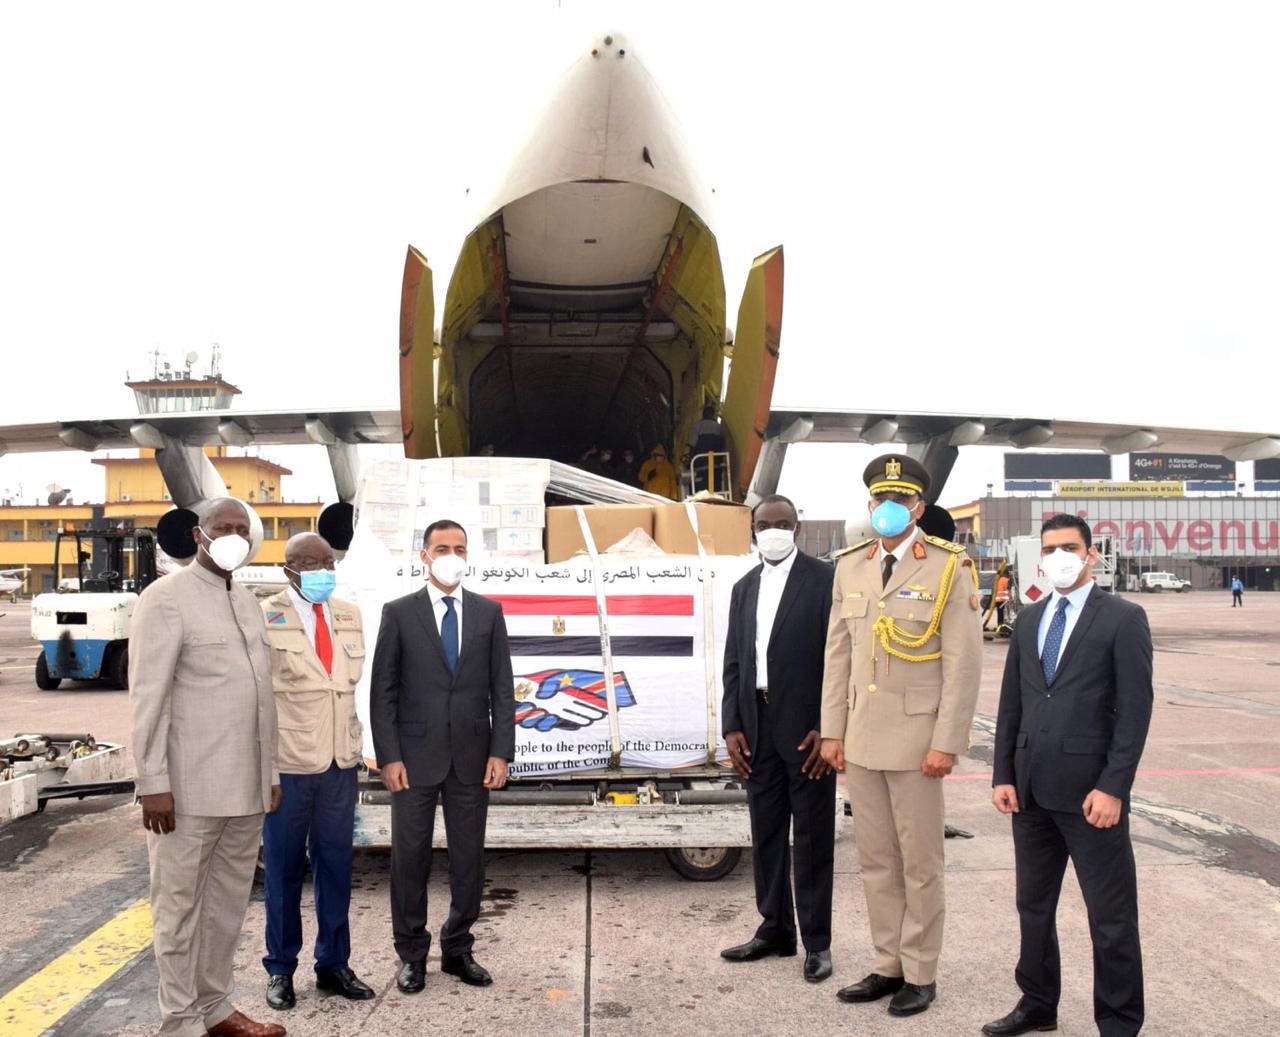 وصول طائرة المساعدات الطبية المقدمة من مصر لجمهورية الكونغو الديمقراطية